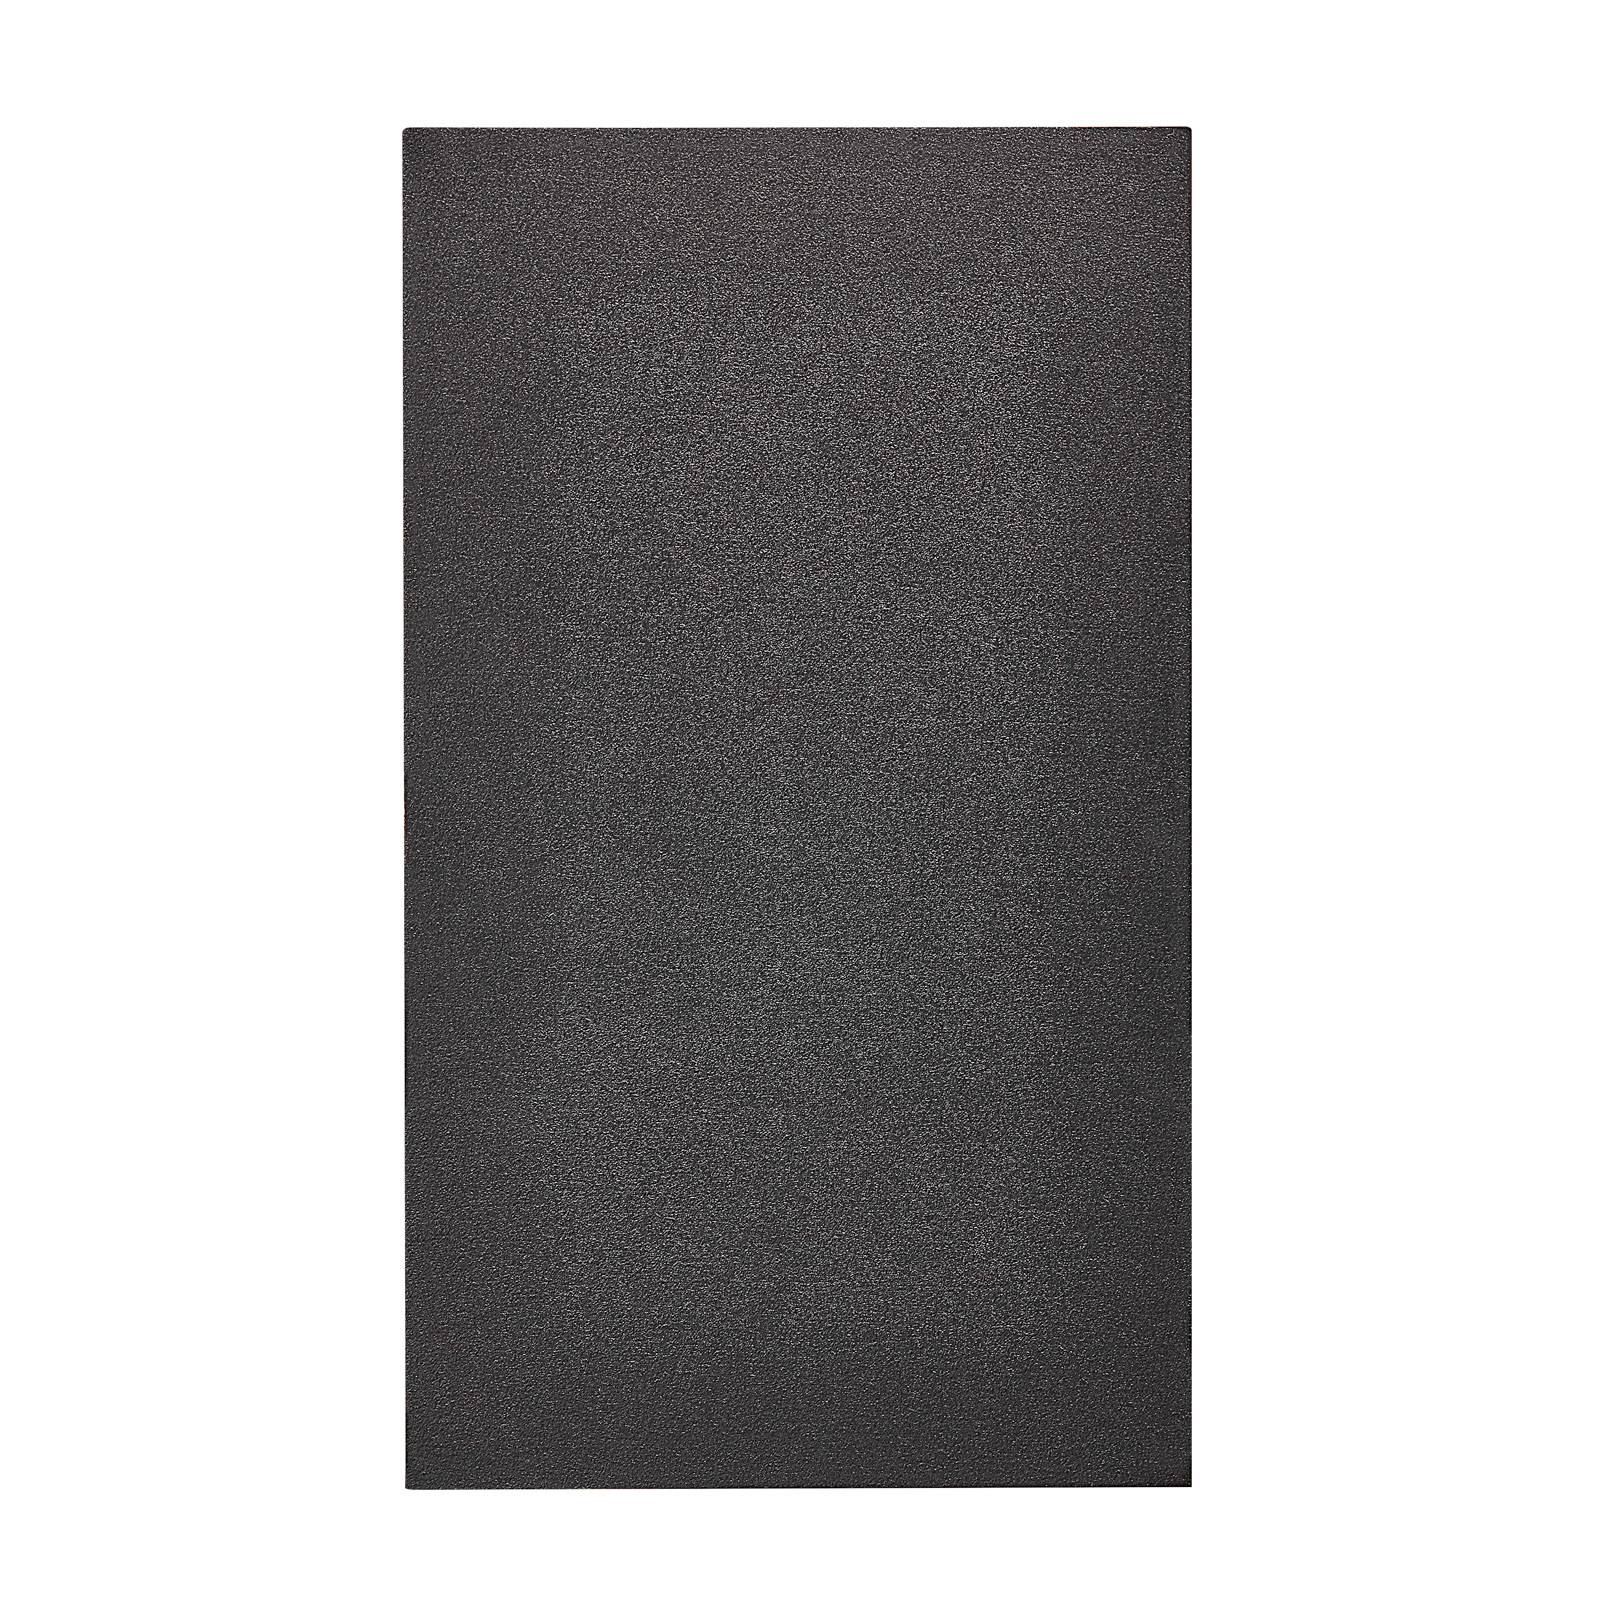 Nordlux Venkovní světlo Canto Maxi Kubi 2, 17 cm, černá